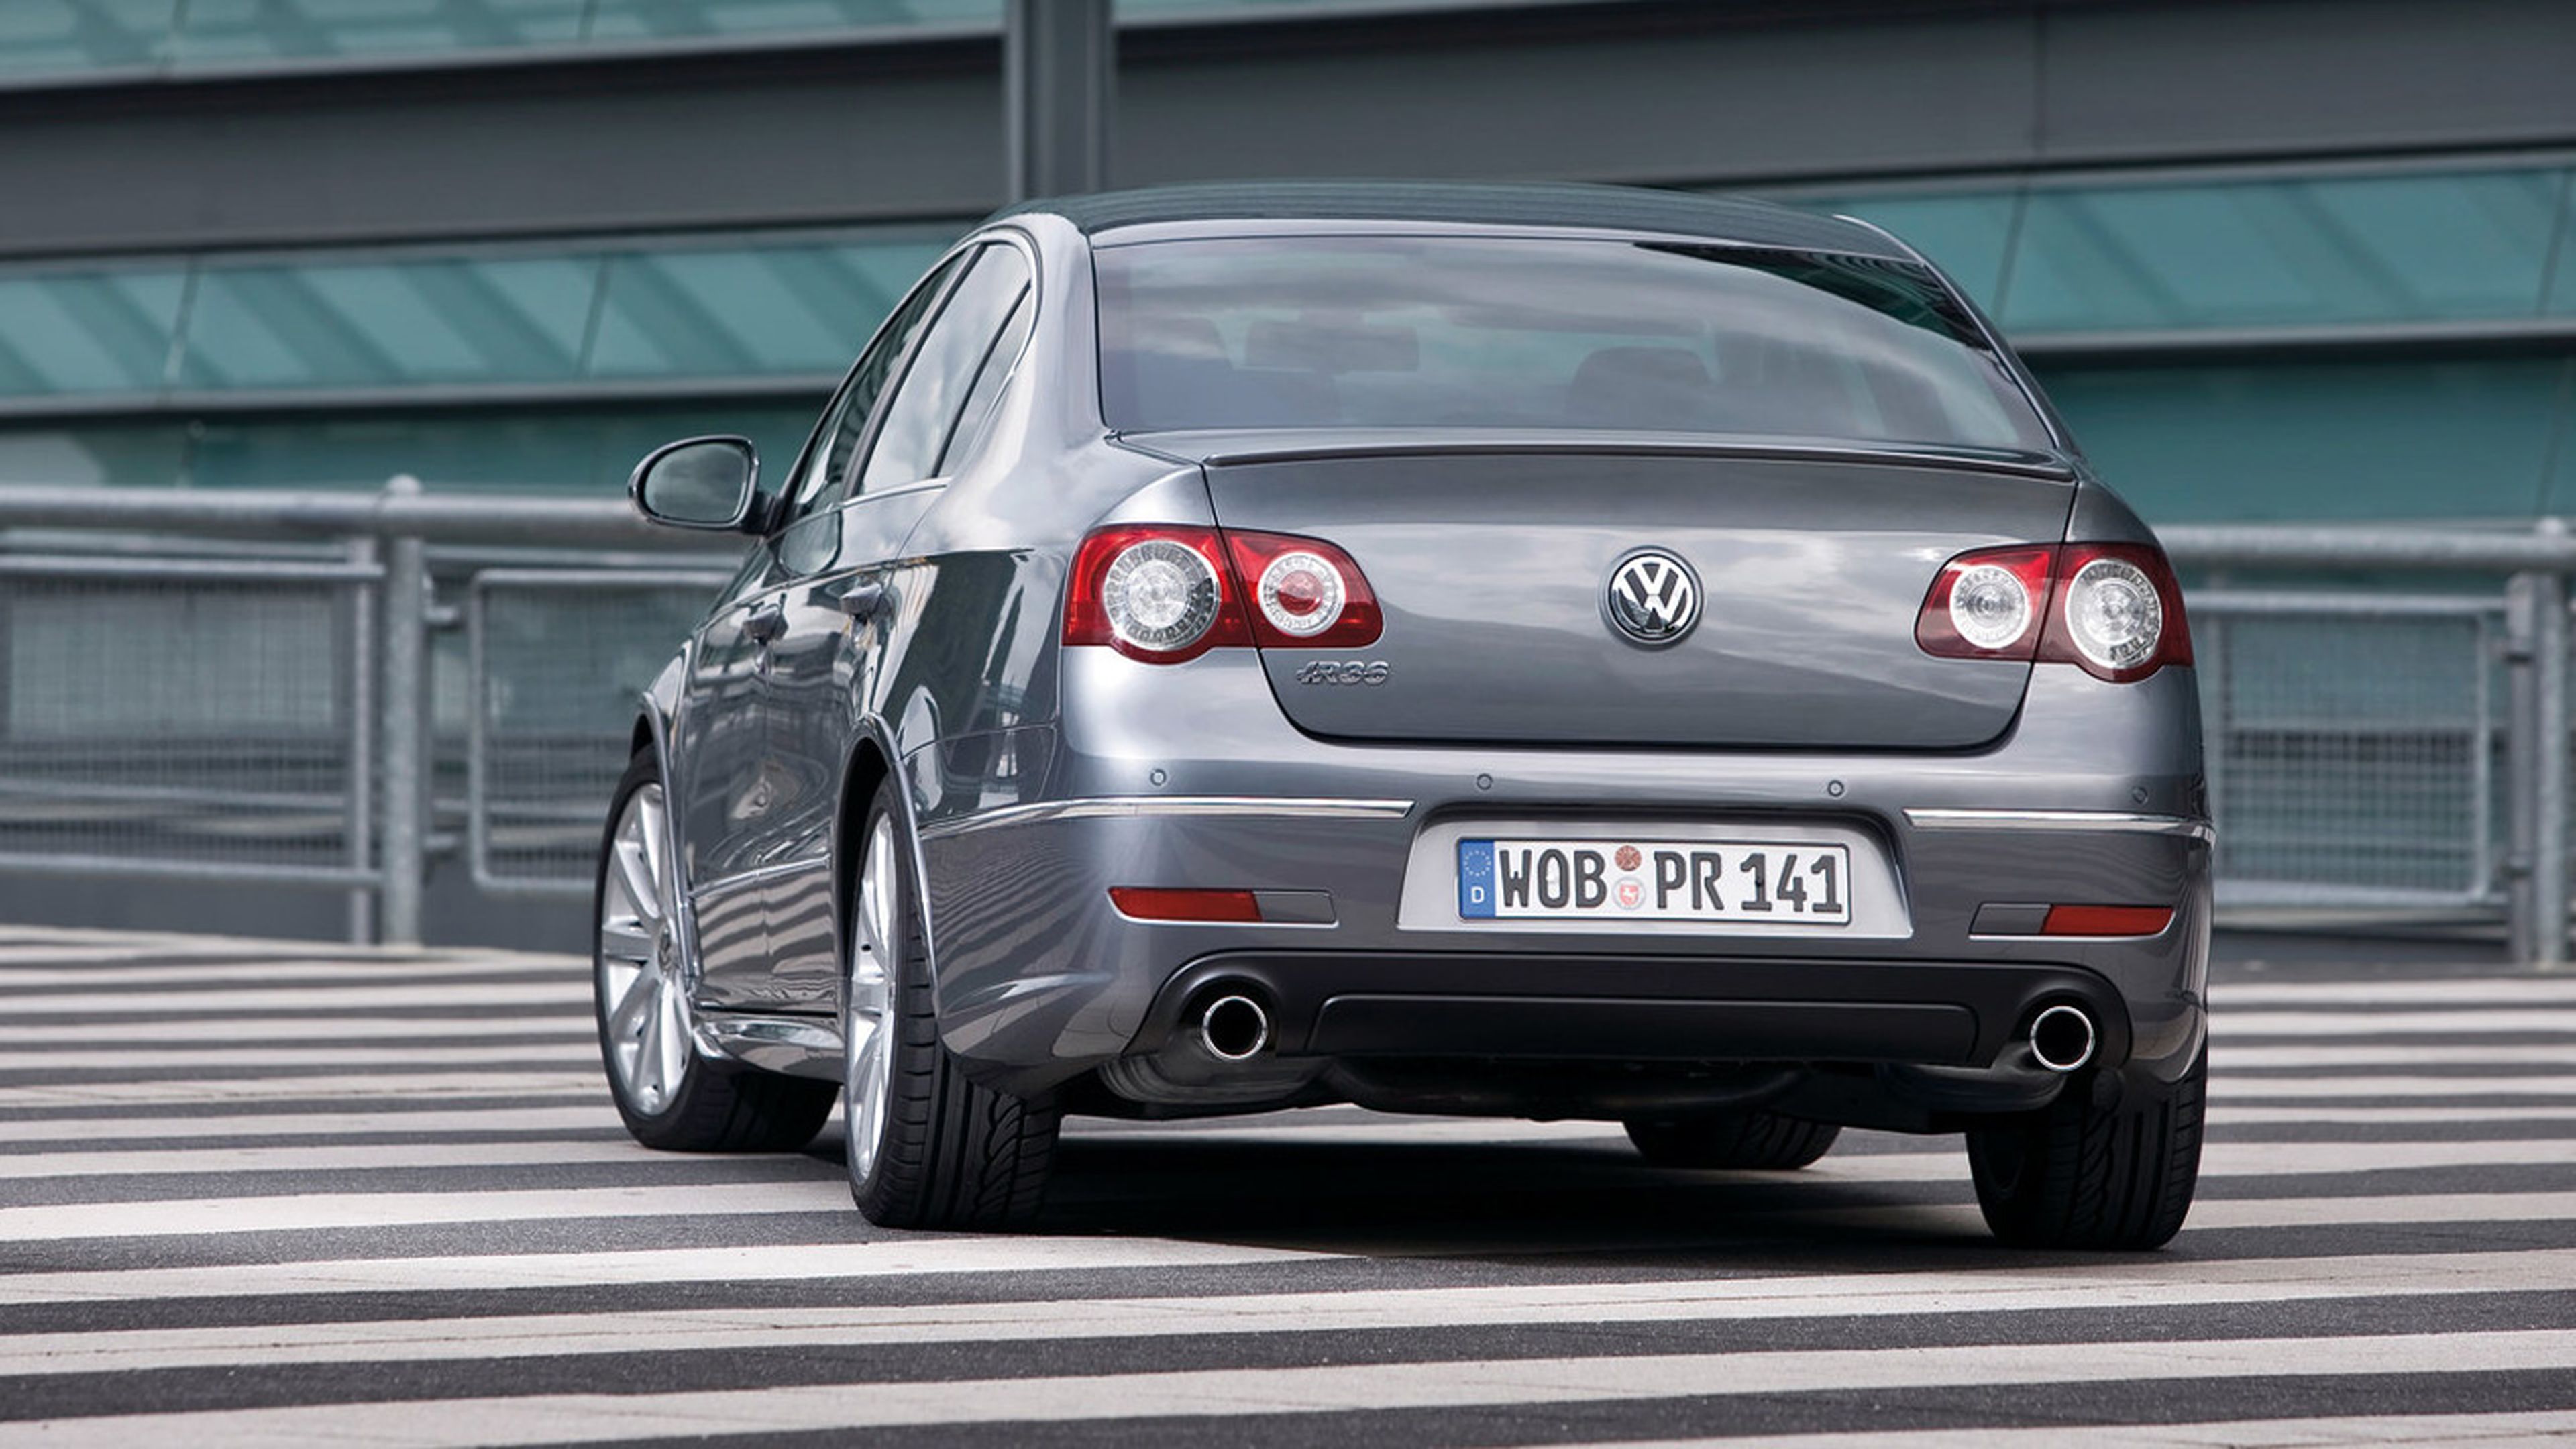 Cuál es la mejor generación del Volkswagen Passat?